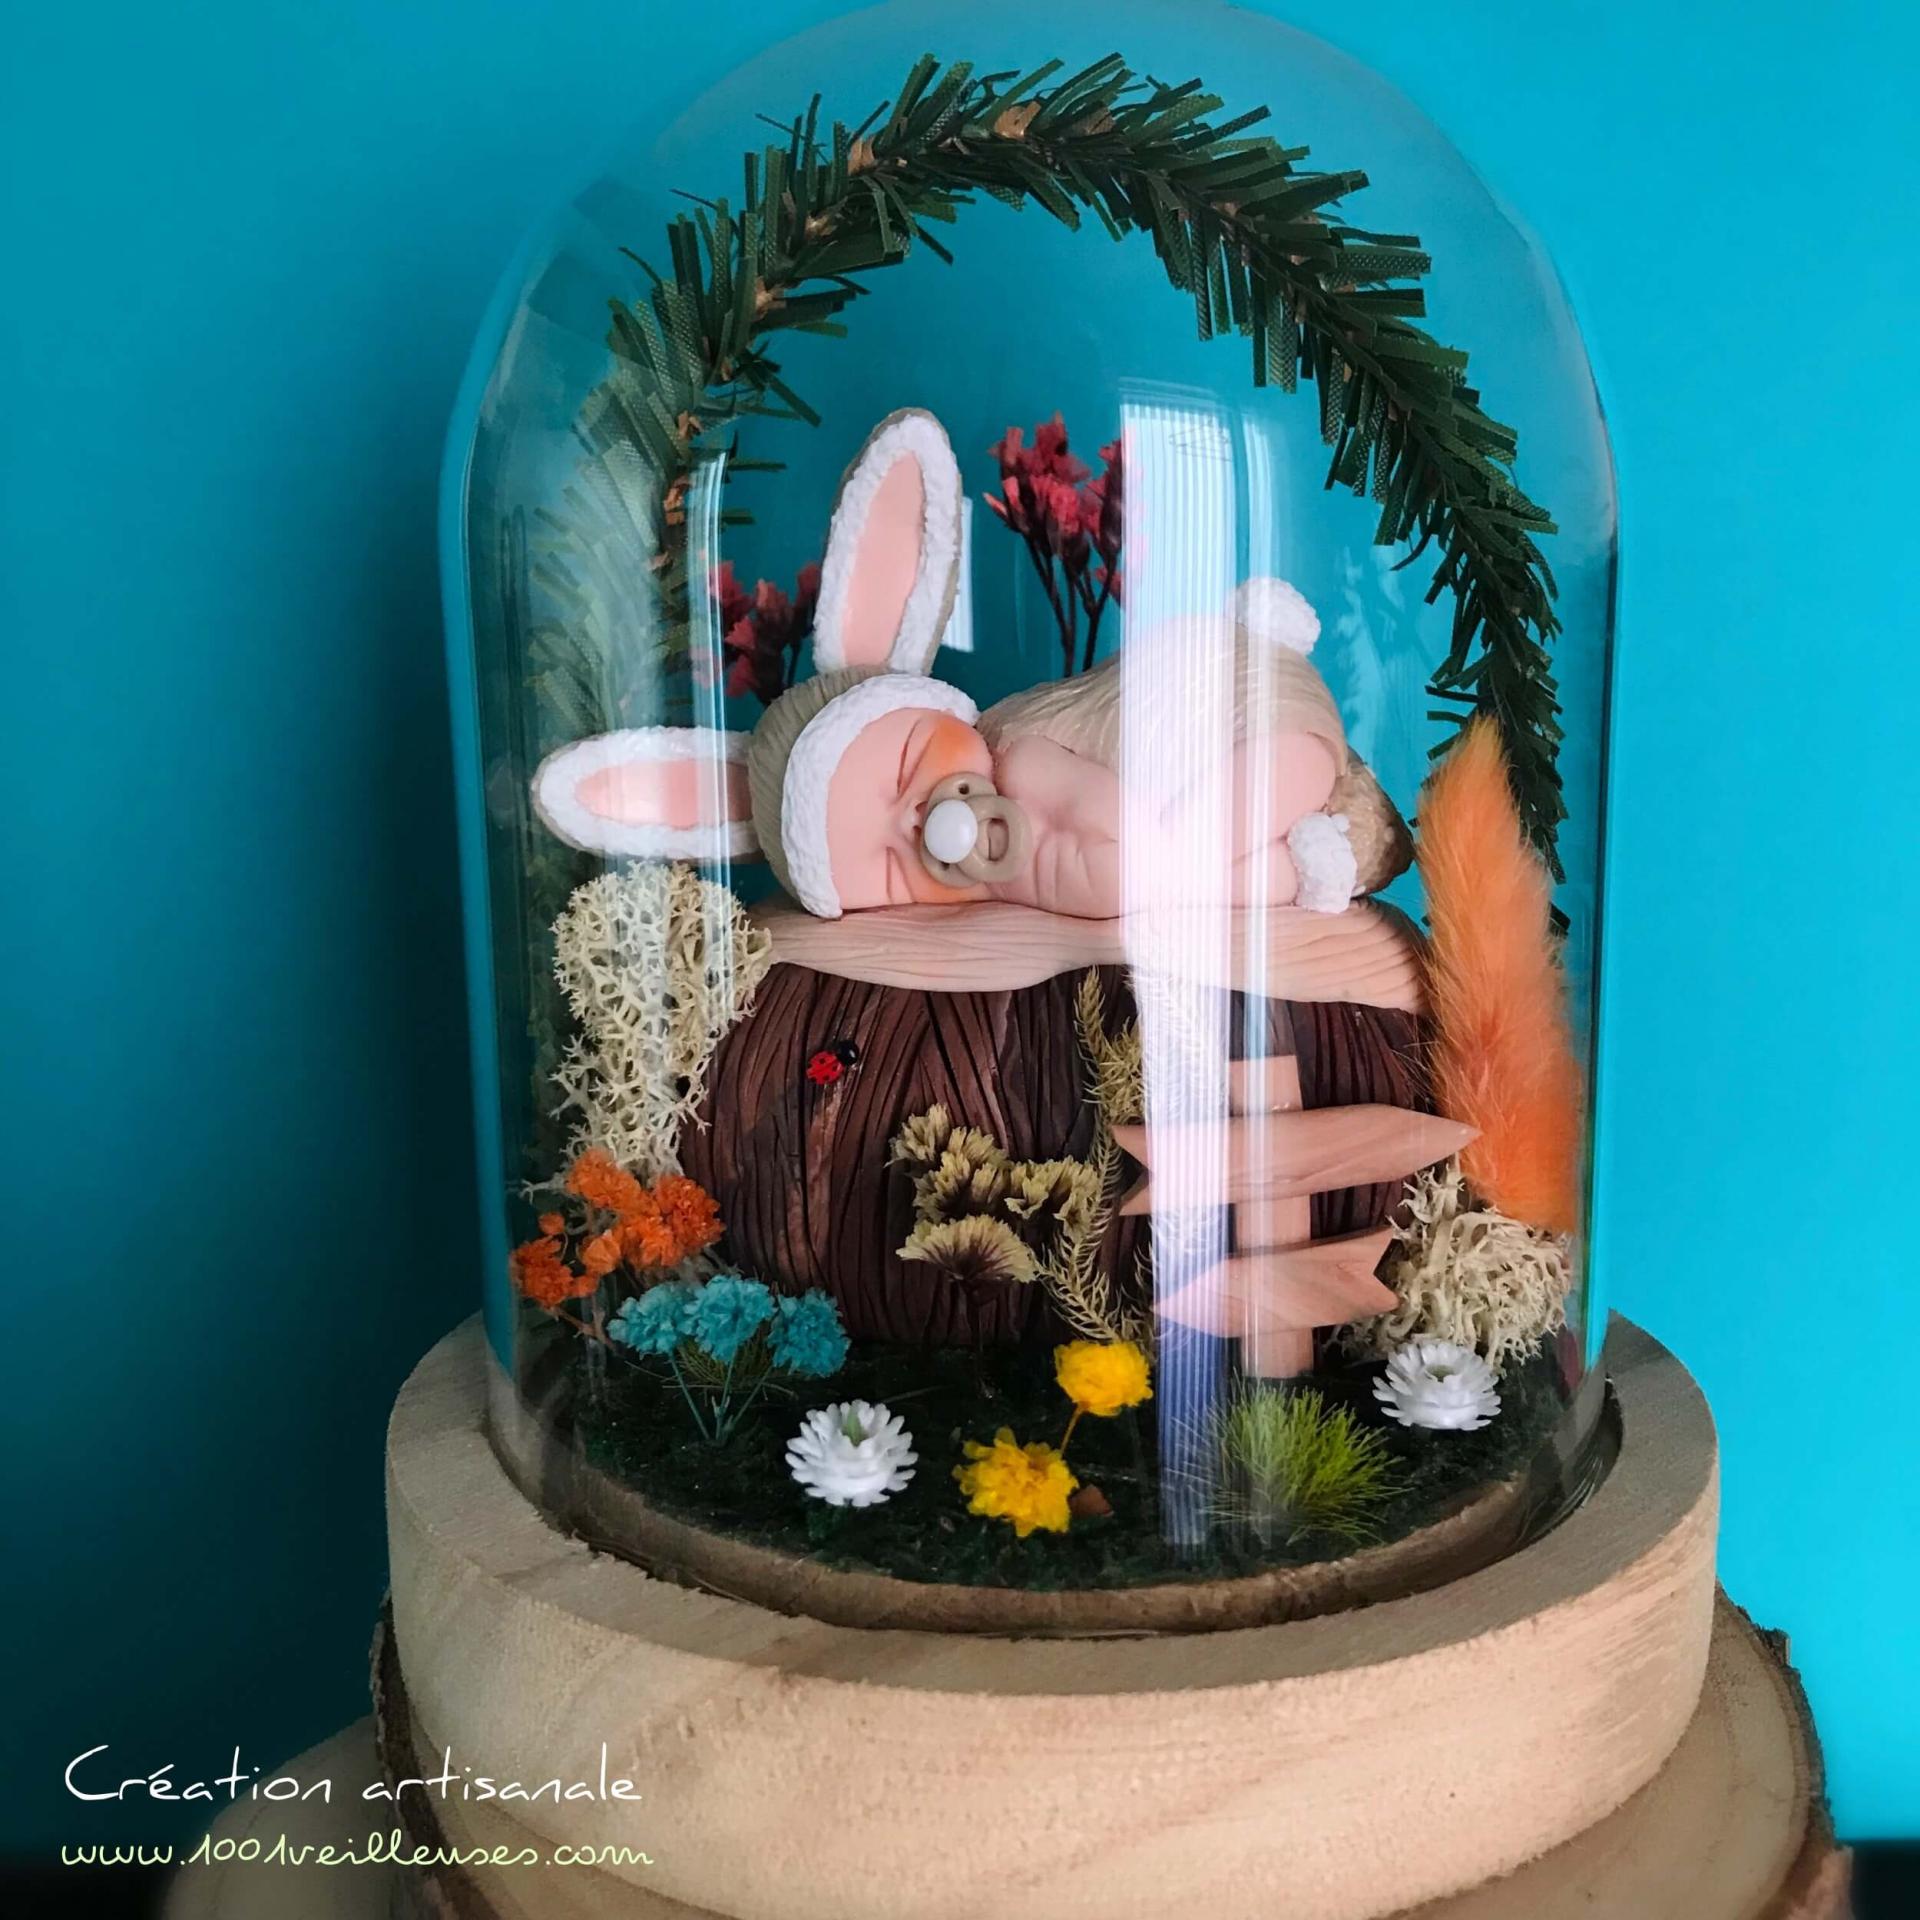 Luz nocturna personalizada y artesanal de vidrio y madera presentada apagada con un bebé disfrazado de conejo bajo una cúpula de vidrio